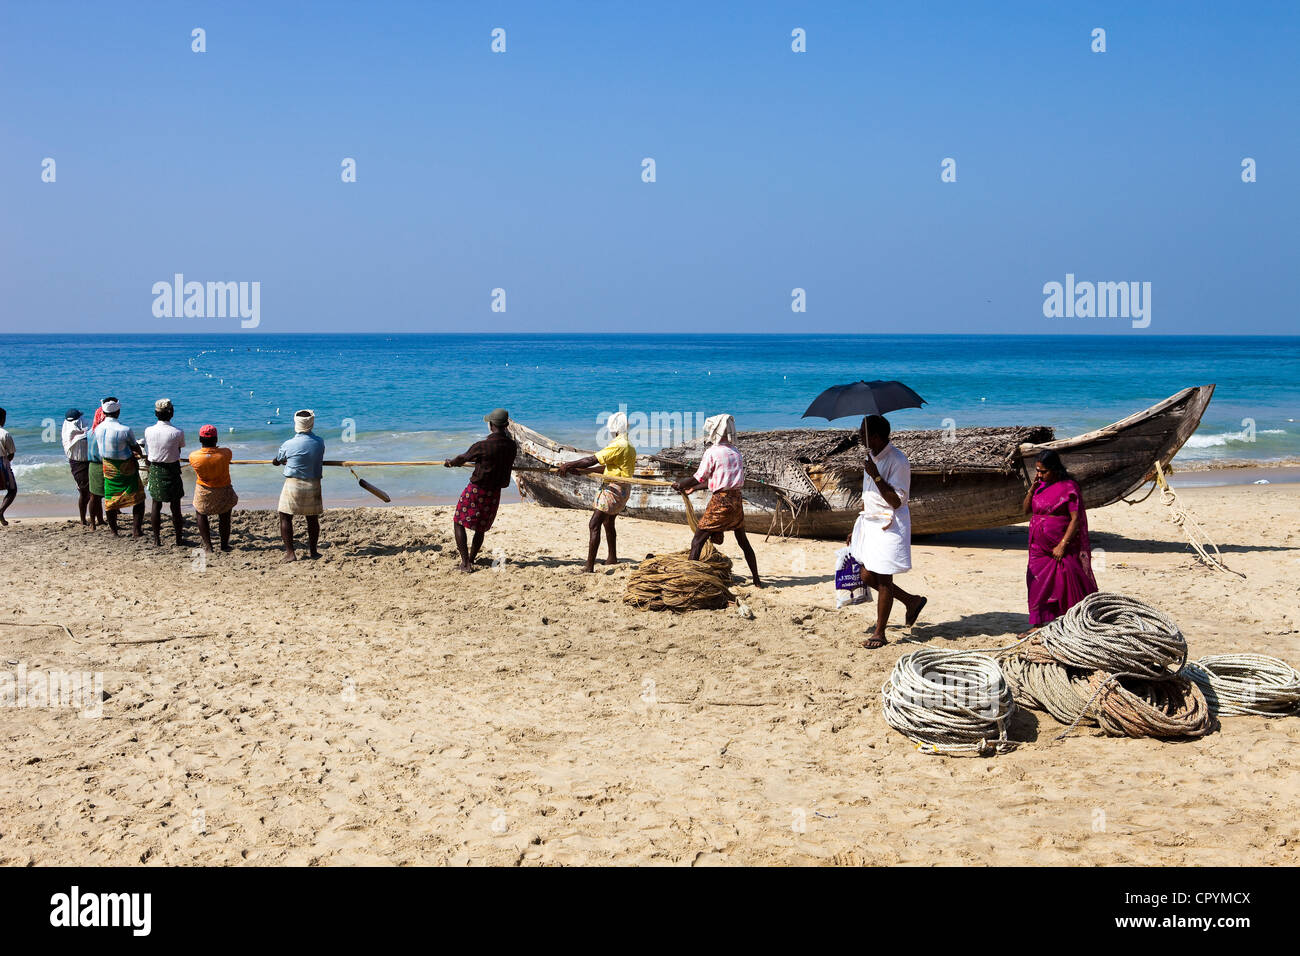 Indien, Bundesstaat Kerala, Kovalam, am frühen Morgen, die Fischer bringen zurück am Strand ein großes Netz aus dem Boot geworfen Stockfoto